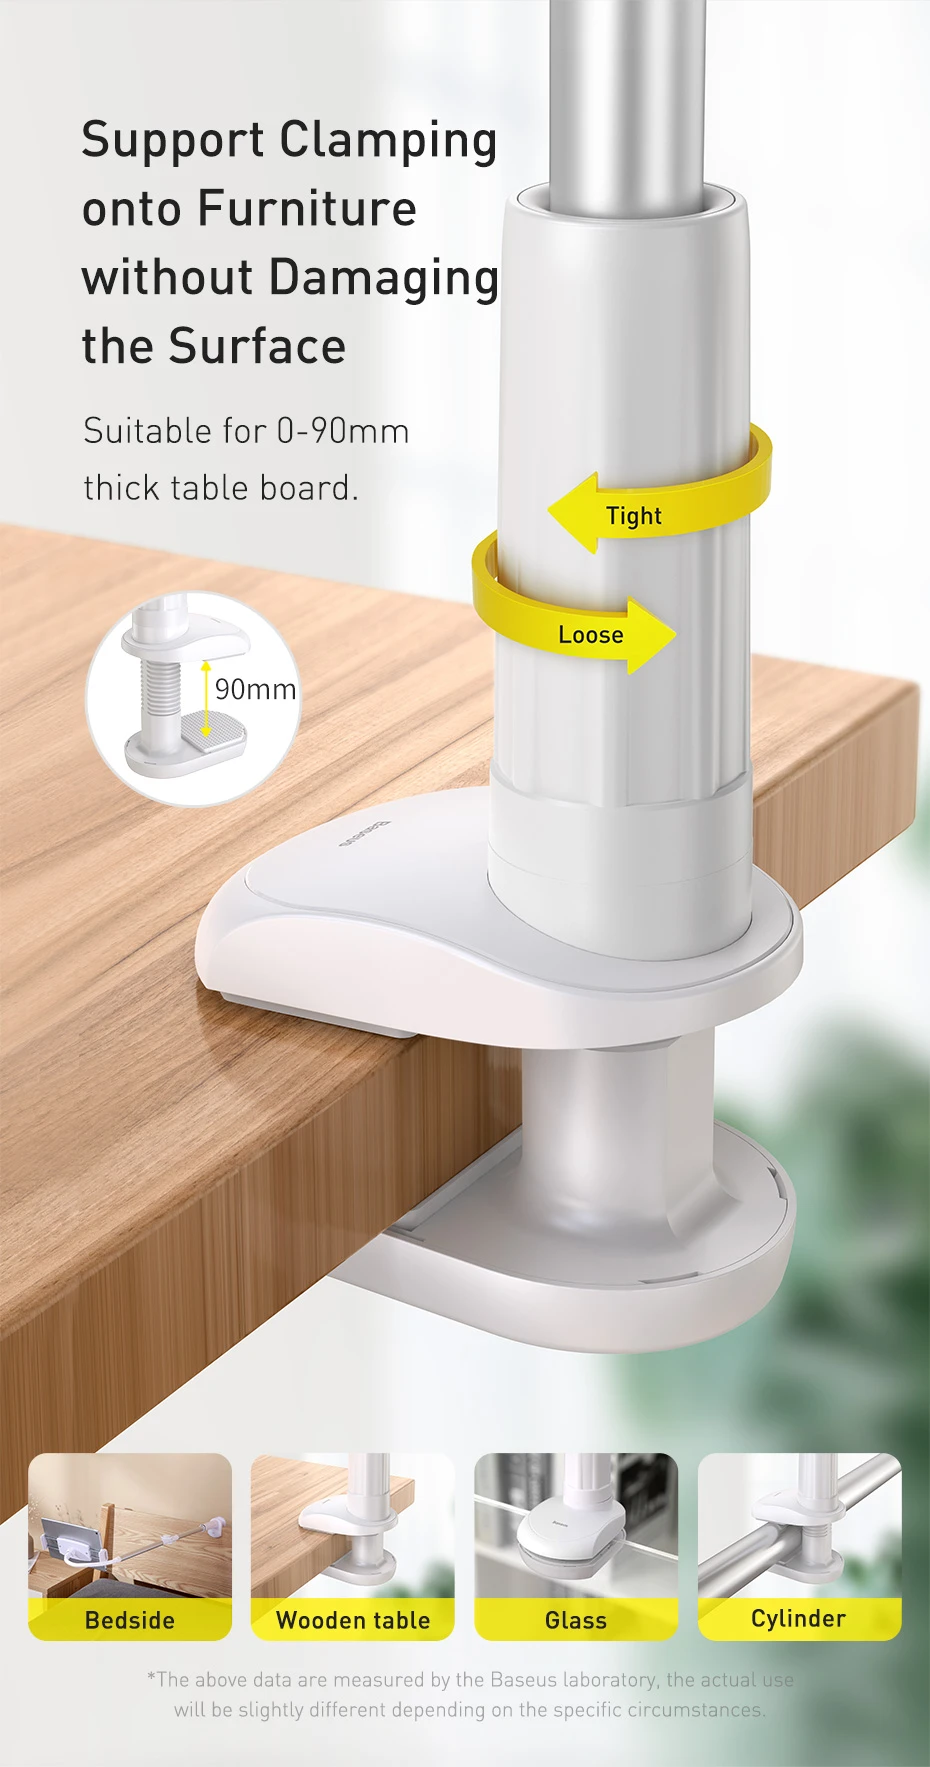 Original Baseus Lazy Holder for Bed Desk Desktop Office Kitchen Phone Holder Long Arm Flexible Mobile Phone Stand Holder Table Clip Bracket for Smart Phone Tablet - Grey